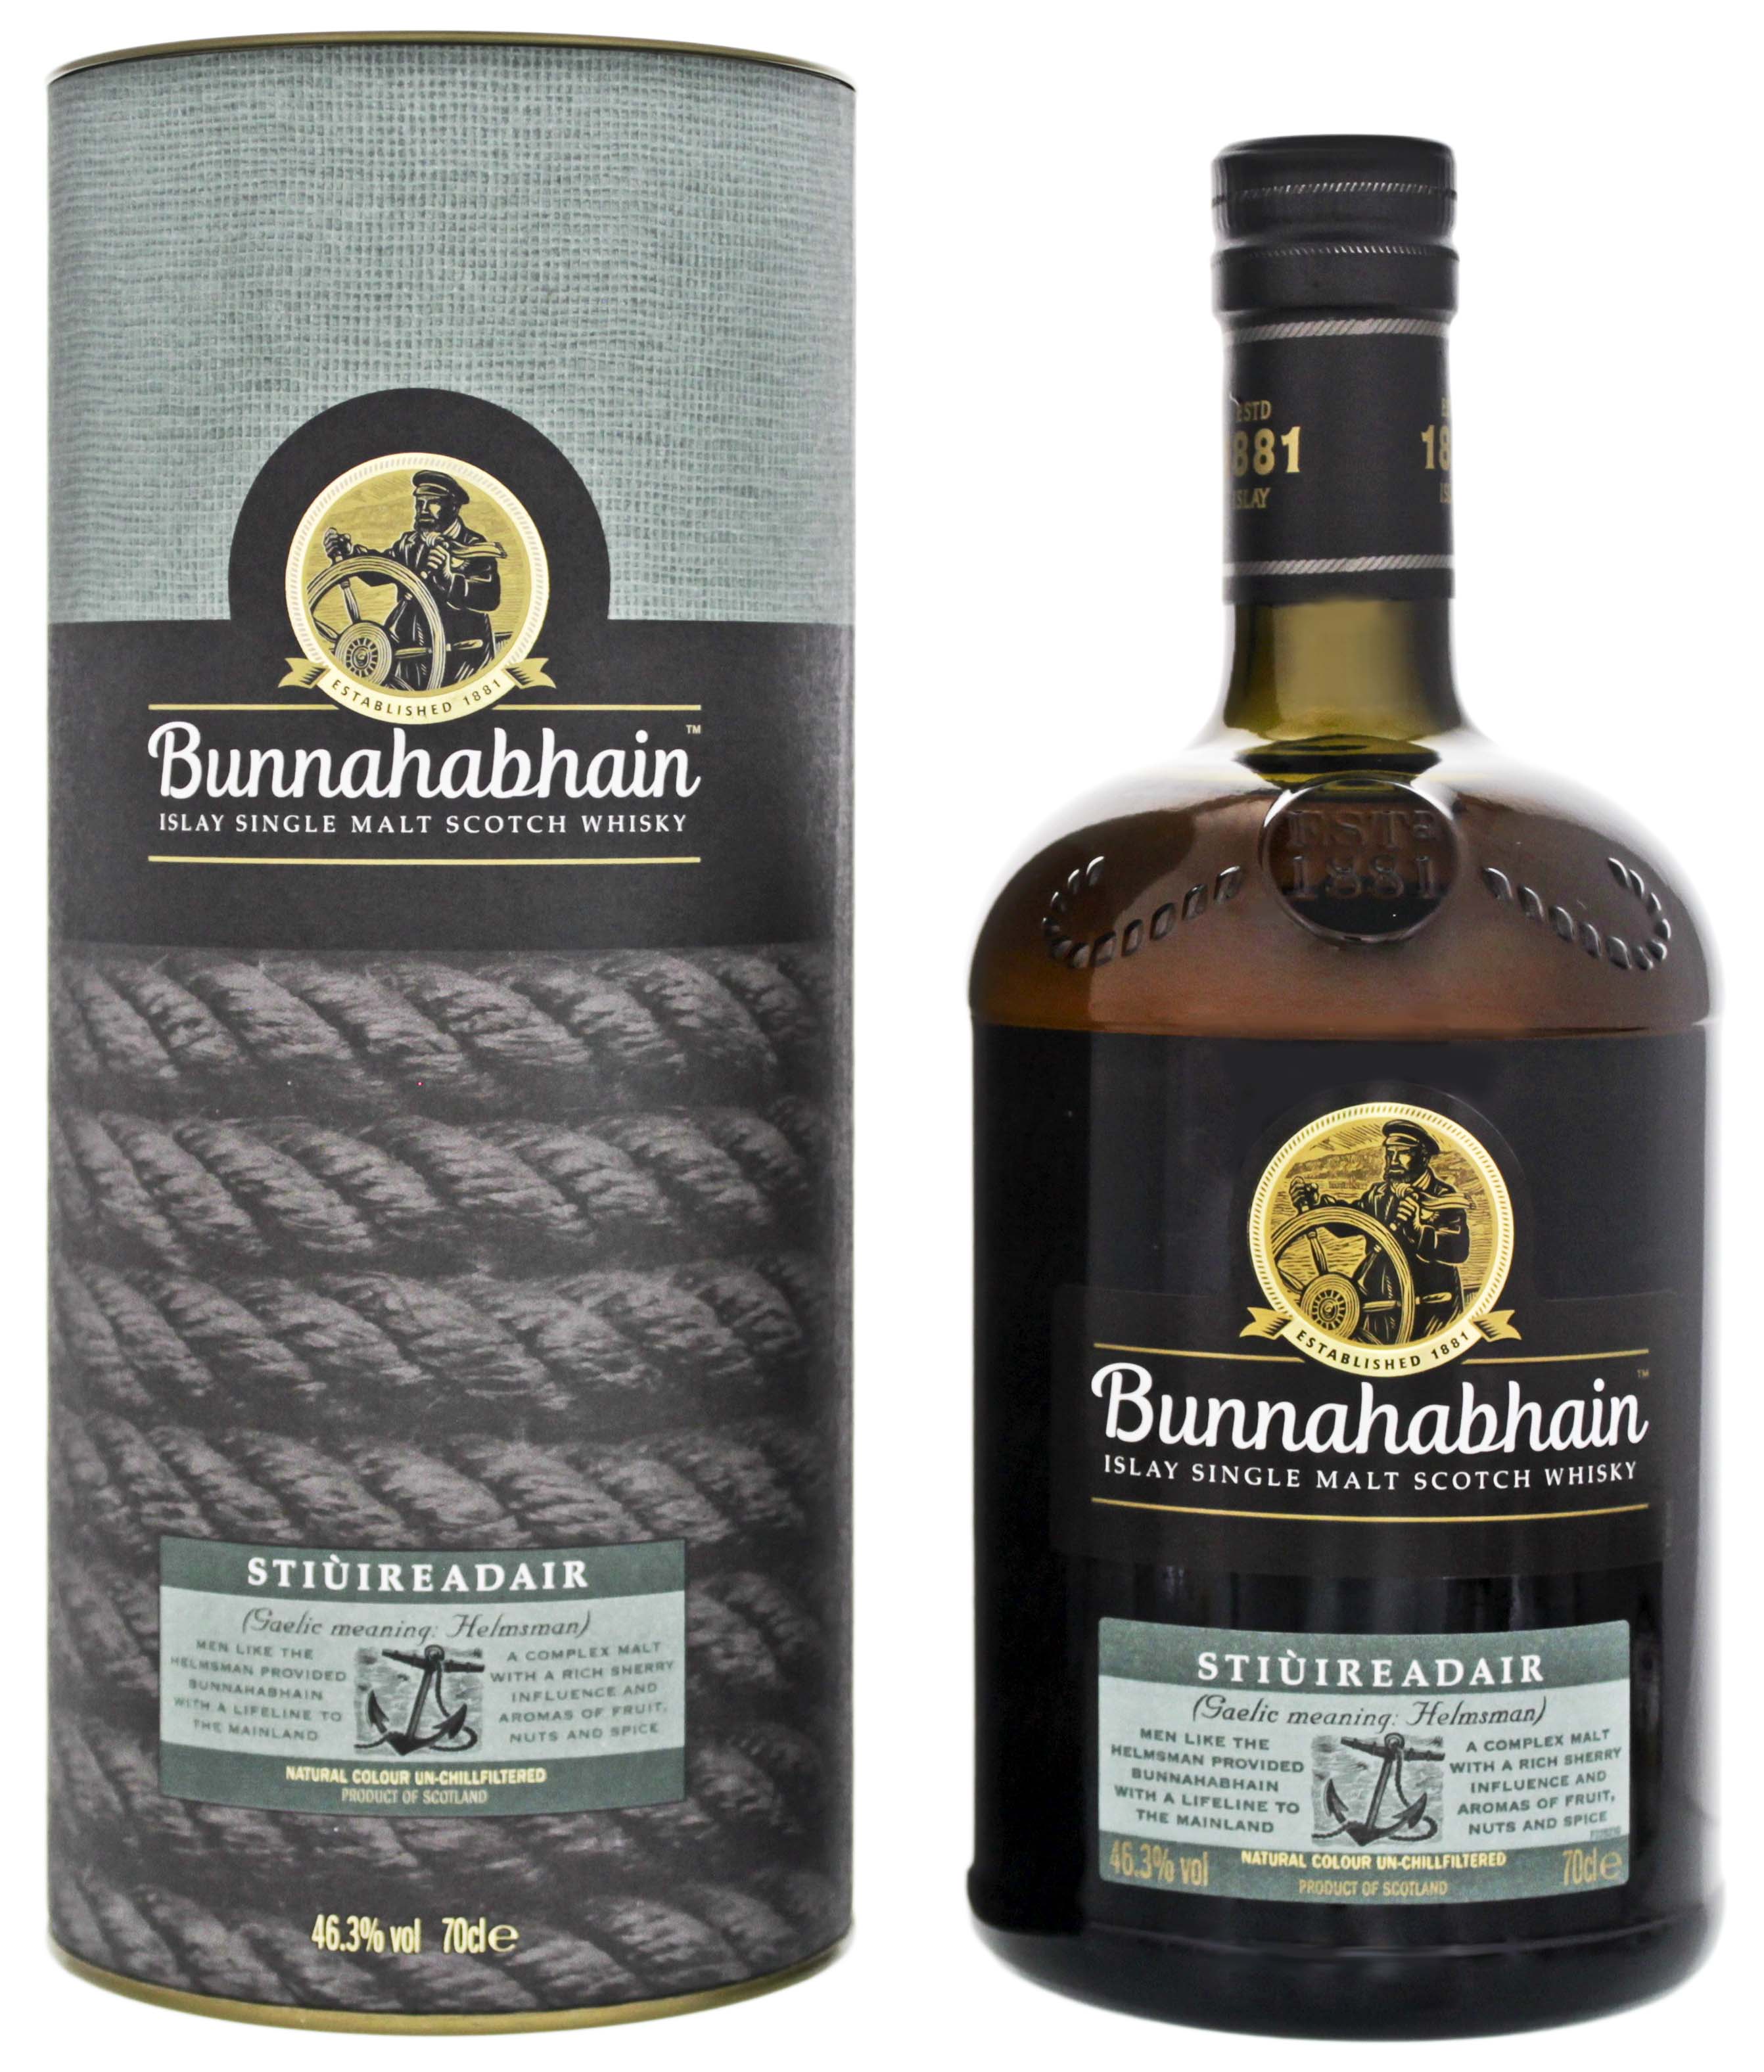 Bunnahabhain Single Malt Whisky Stiùireadair jetzt kaufen im Drinkology  Online Shop !